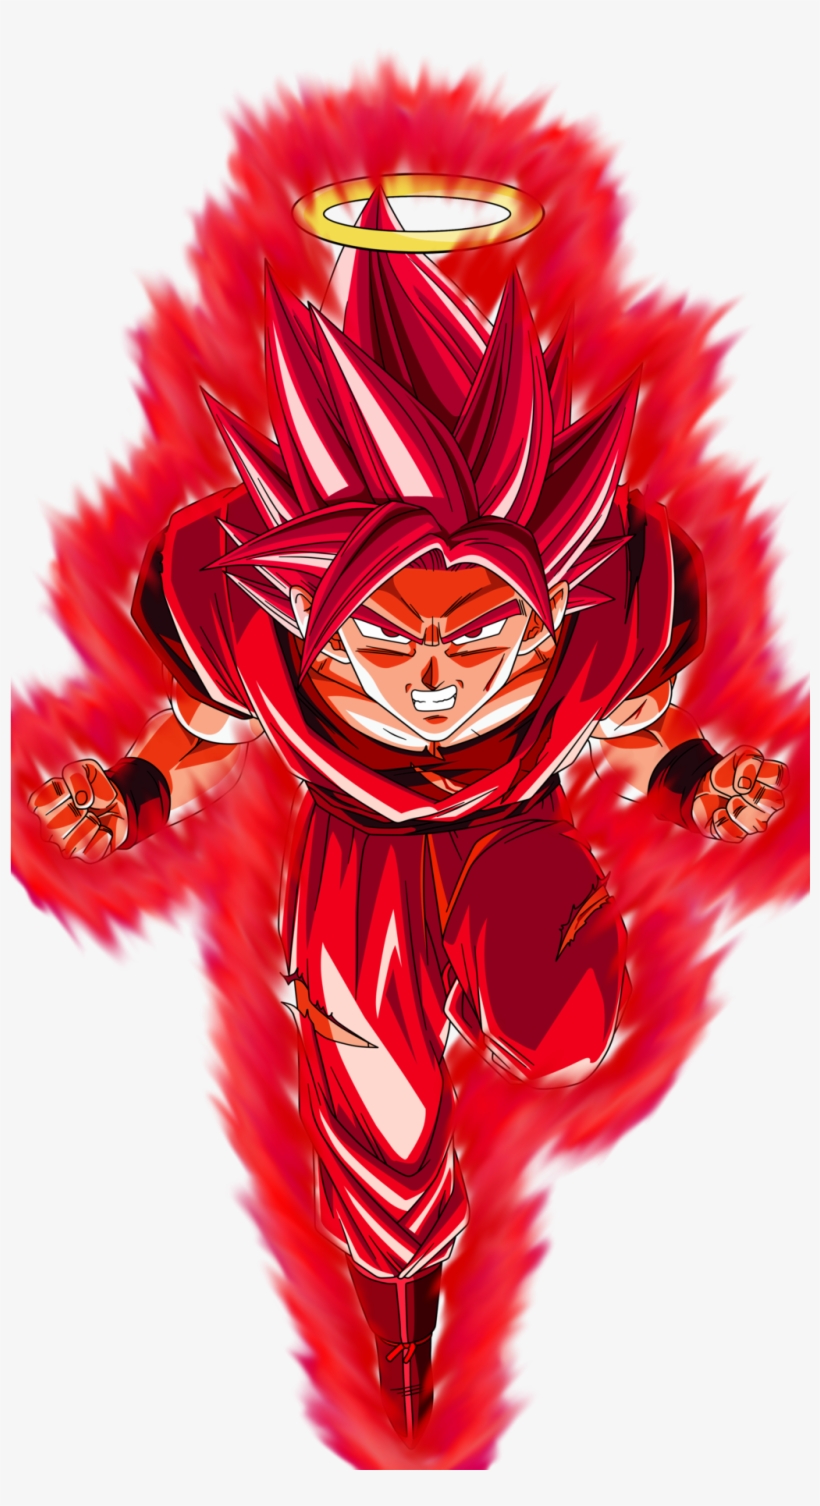 Goku Super Sayian Blue Kaioken - Goku Ssj Blue Kaioken X10 Png